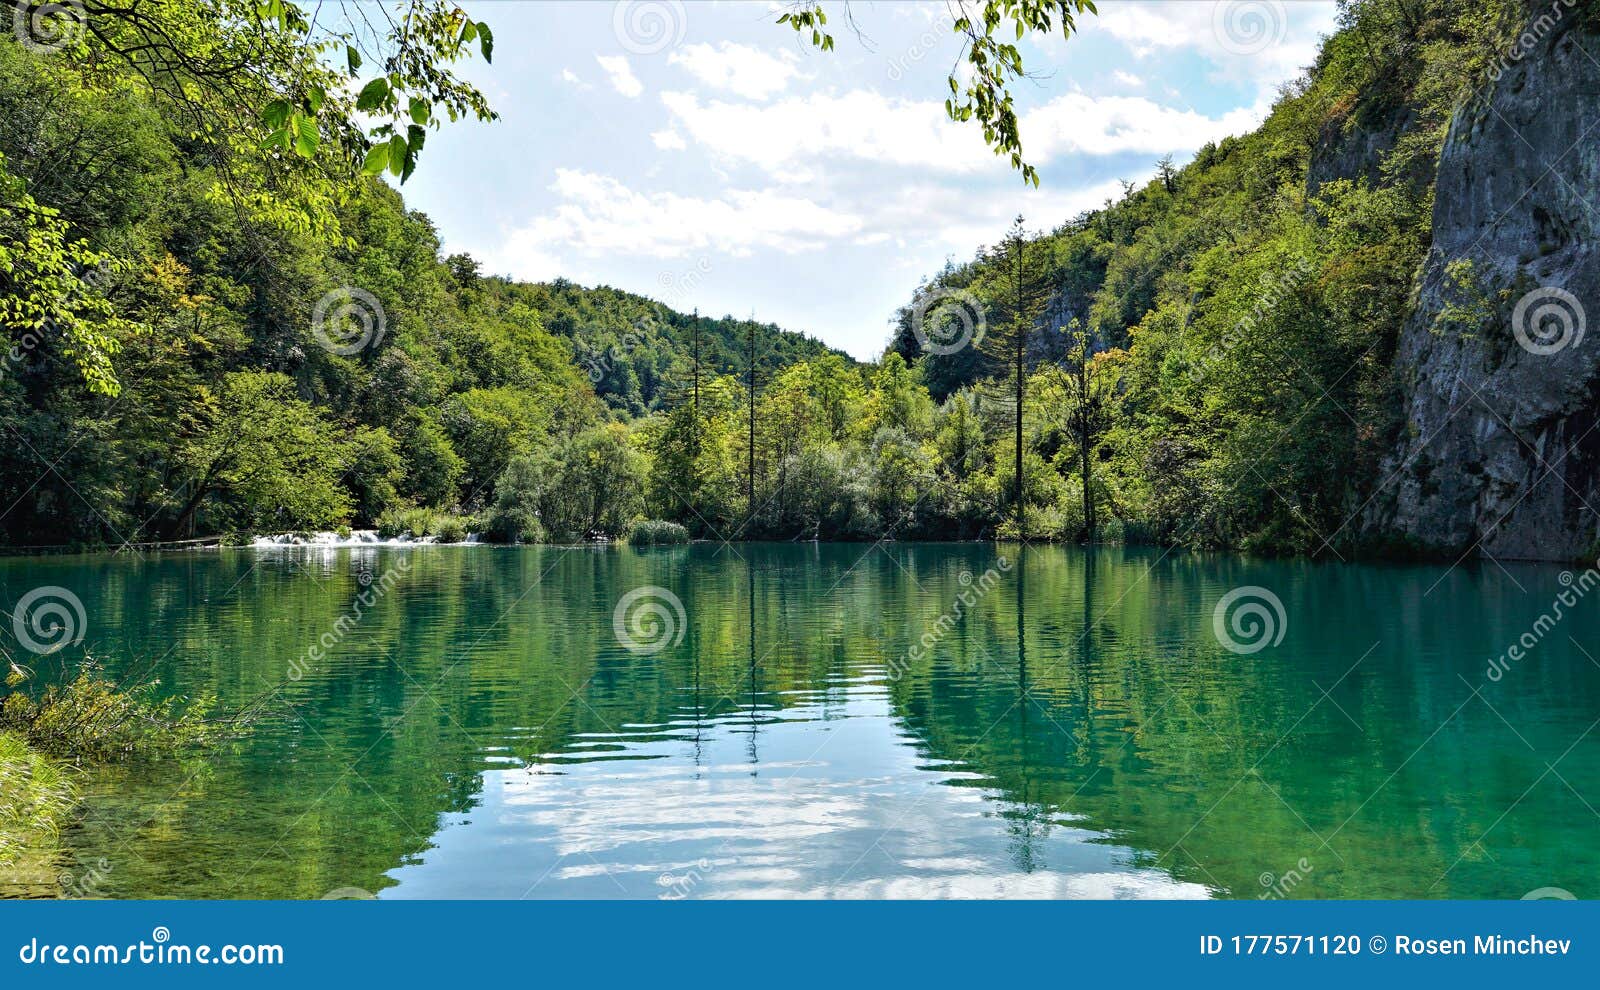 2_gavanovac lake from plitvicÃÂµ lakes in croatia.